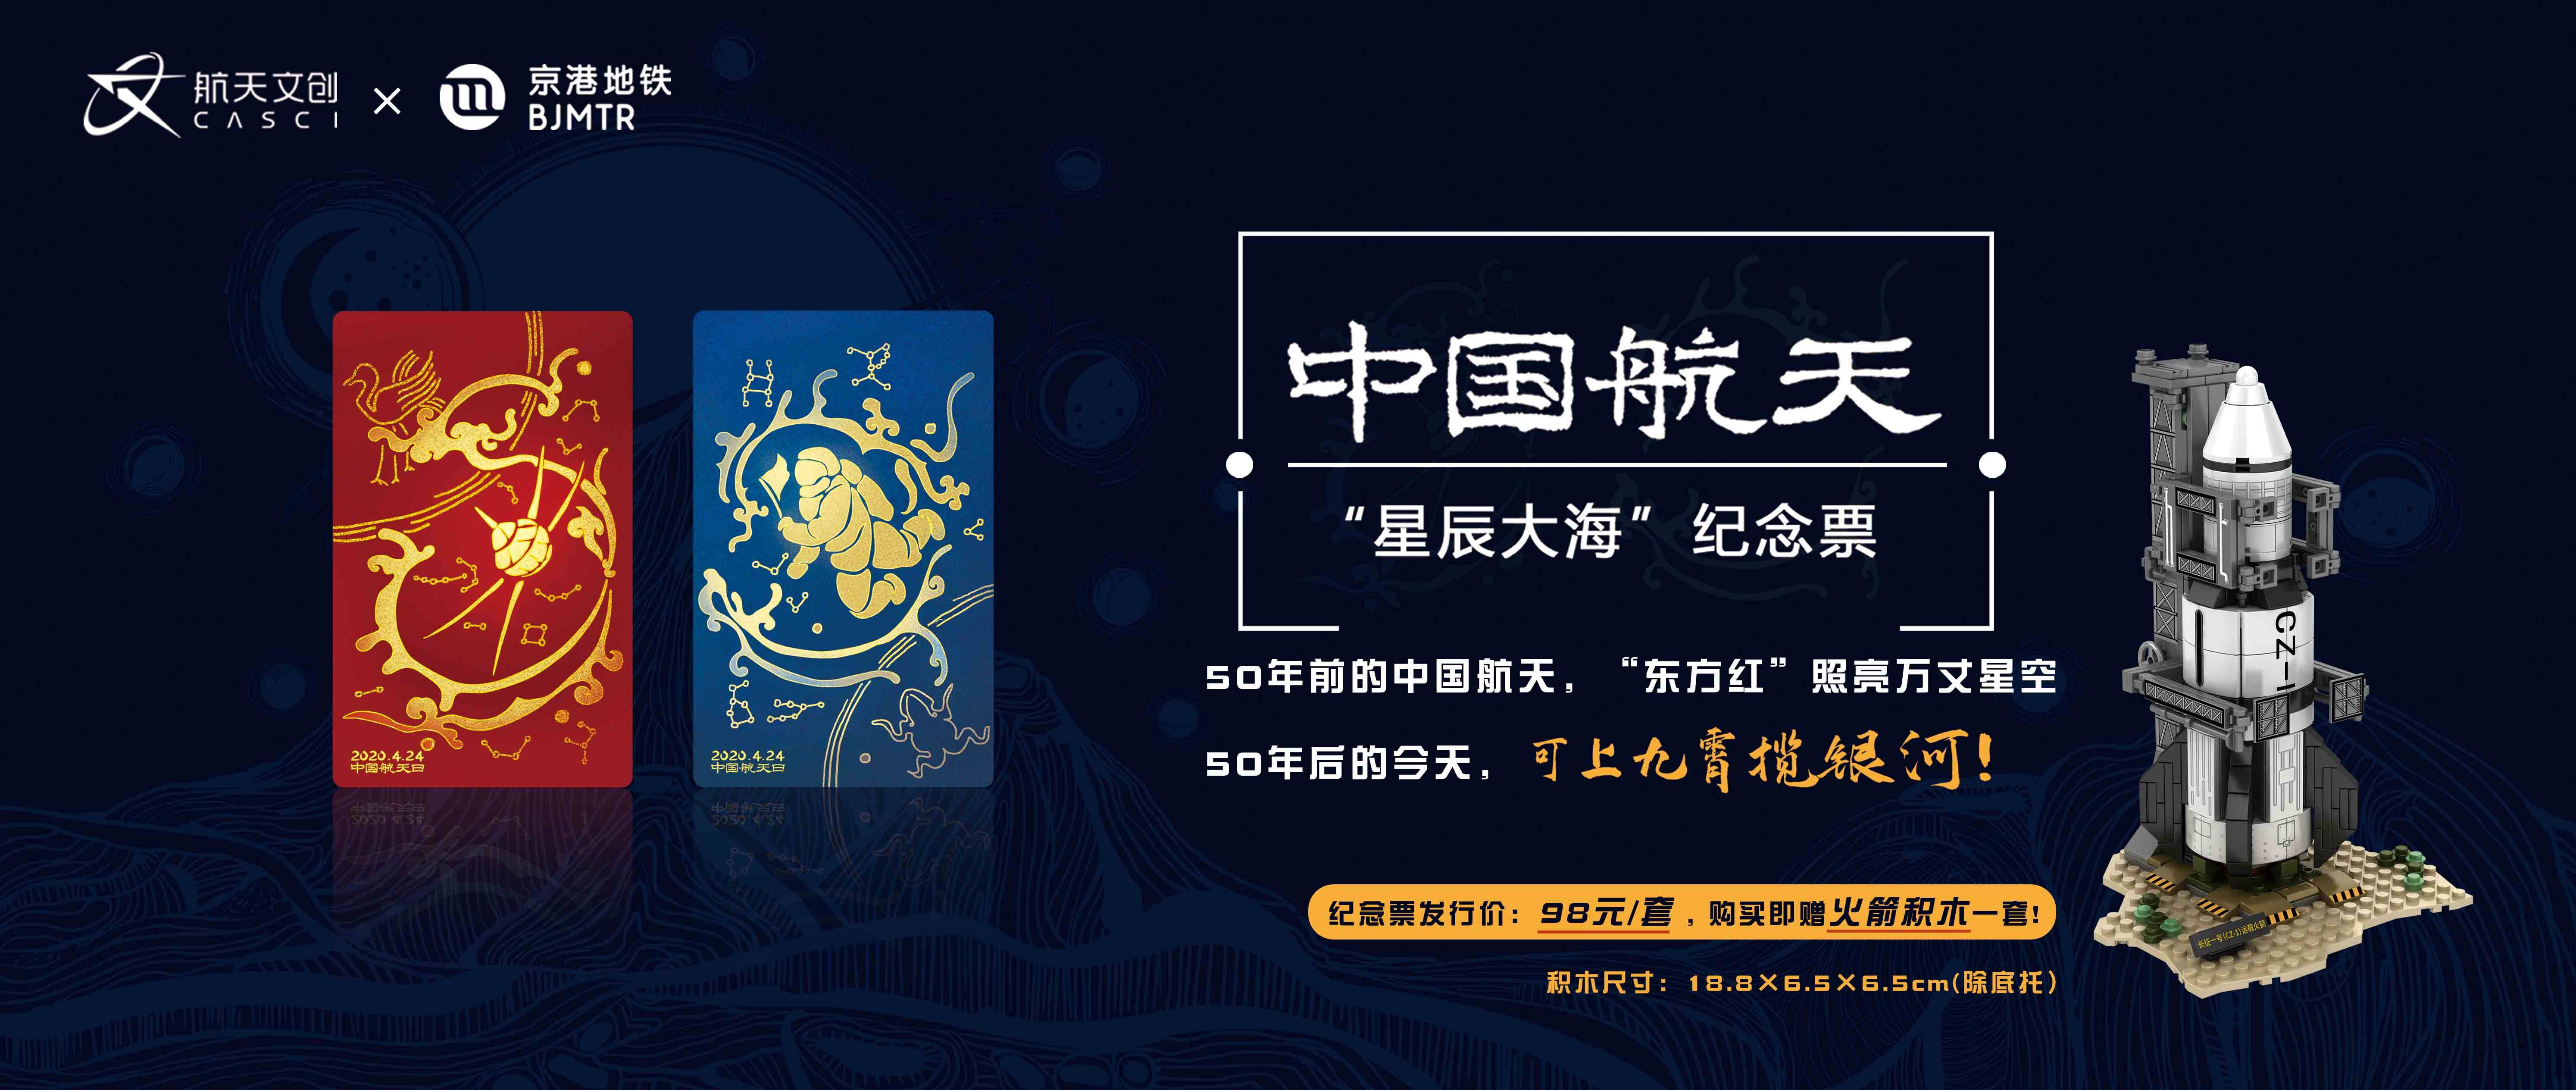 航天文创x京港地铁中国航天系列星辰大海纪念票正式发售